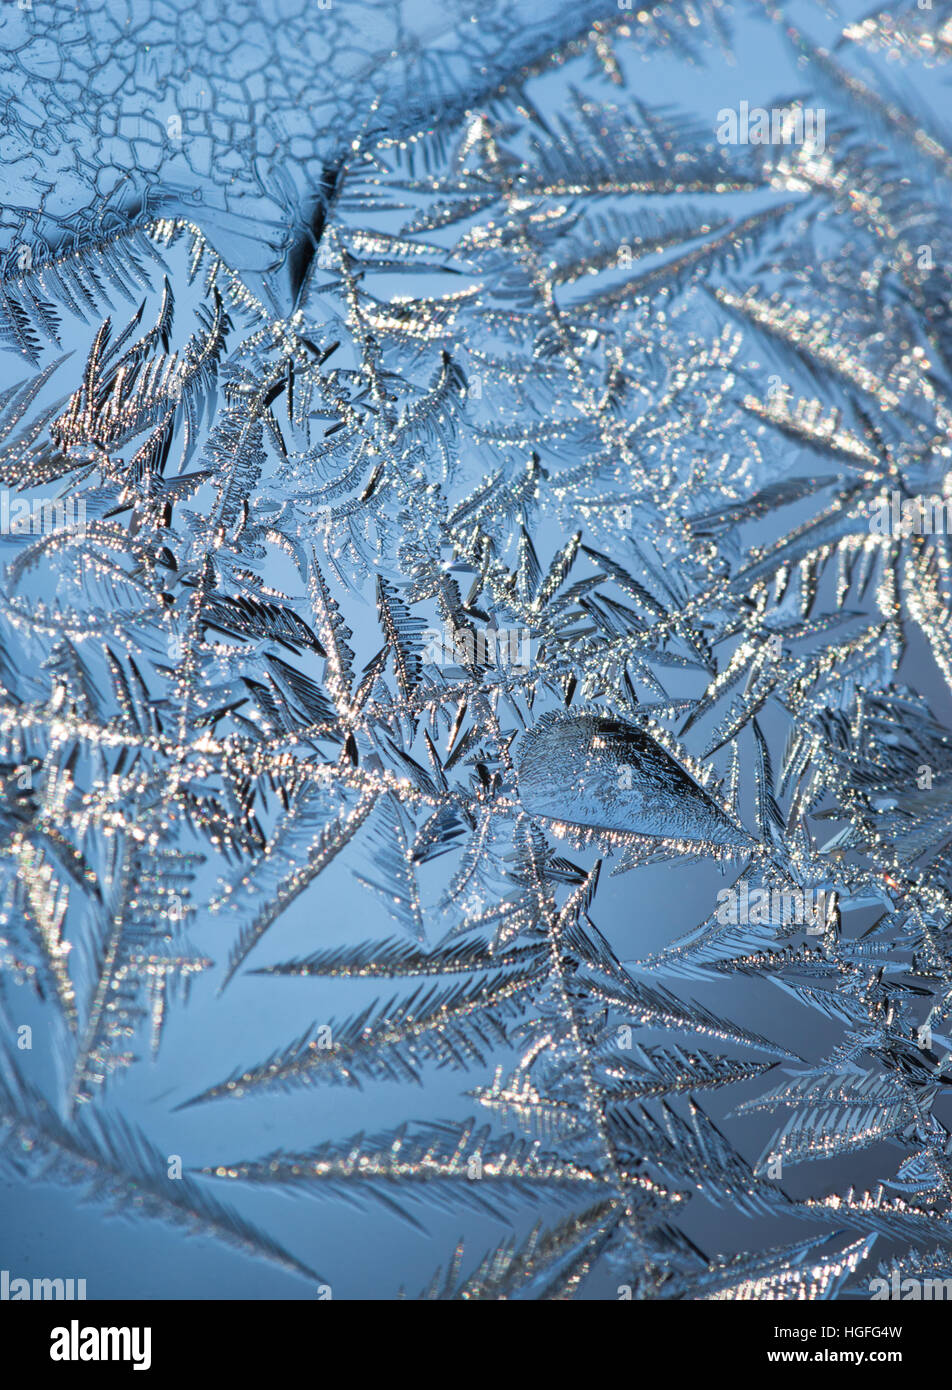 Close up de cristaux de glace formant les complexes modes sur une fenêtre avec ciel bleu en arrière-plan. Profondeur de champ. Banque D'Images